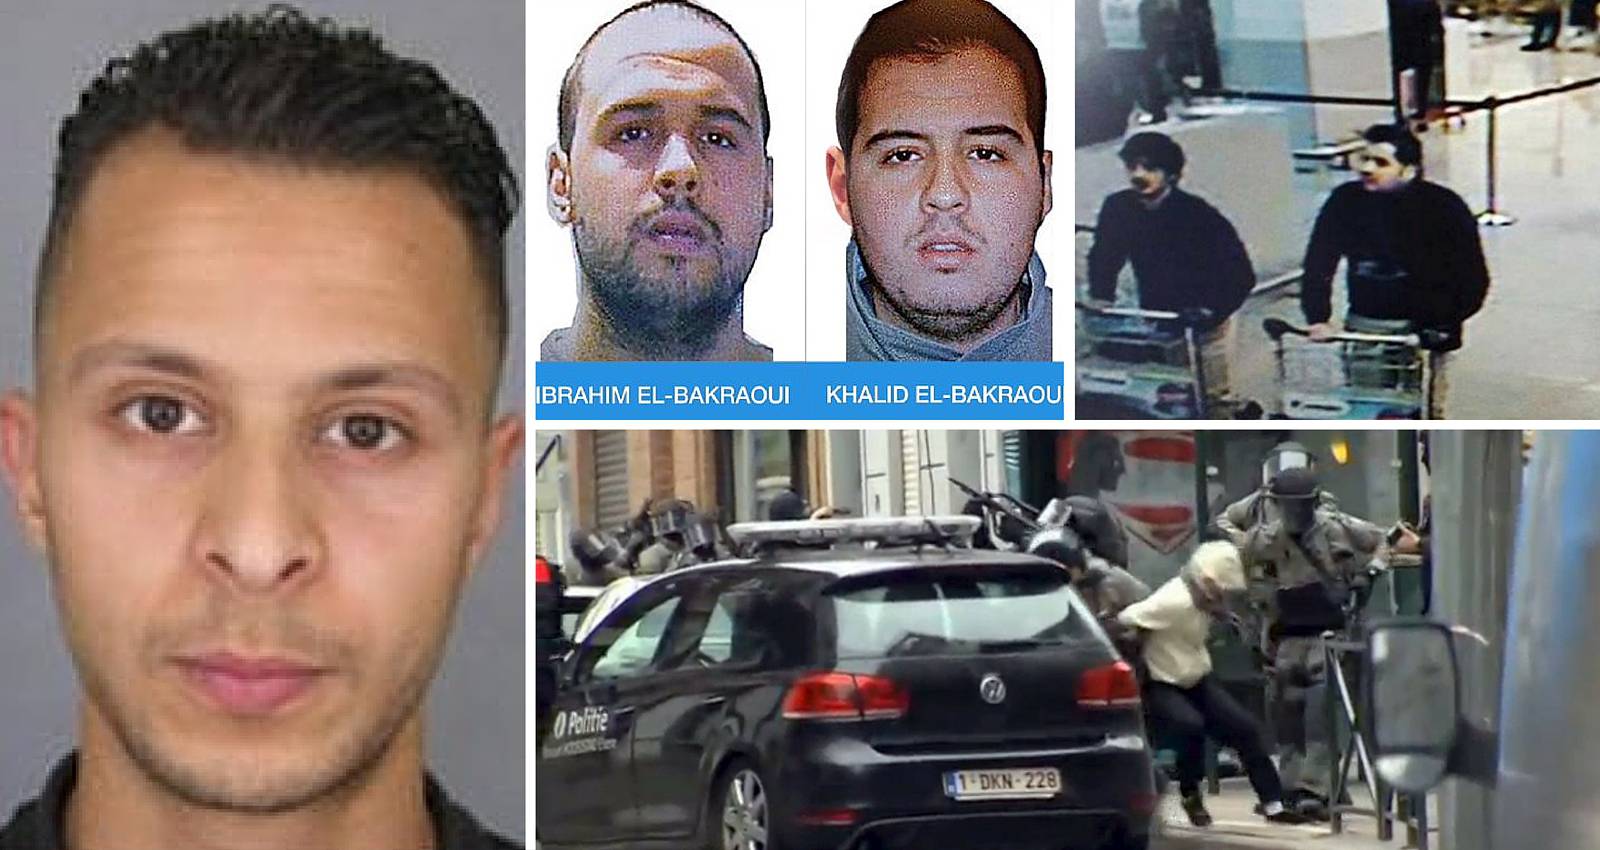 Zavjera: Evo kako su povezani bombaši iz Pariza i Bruxellesa